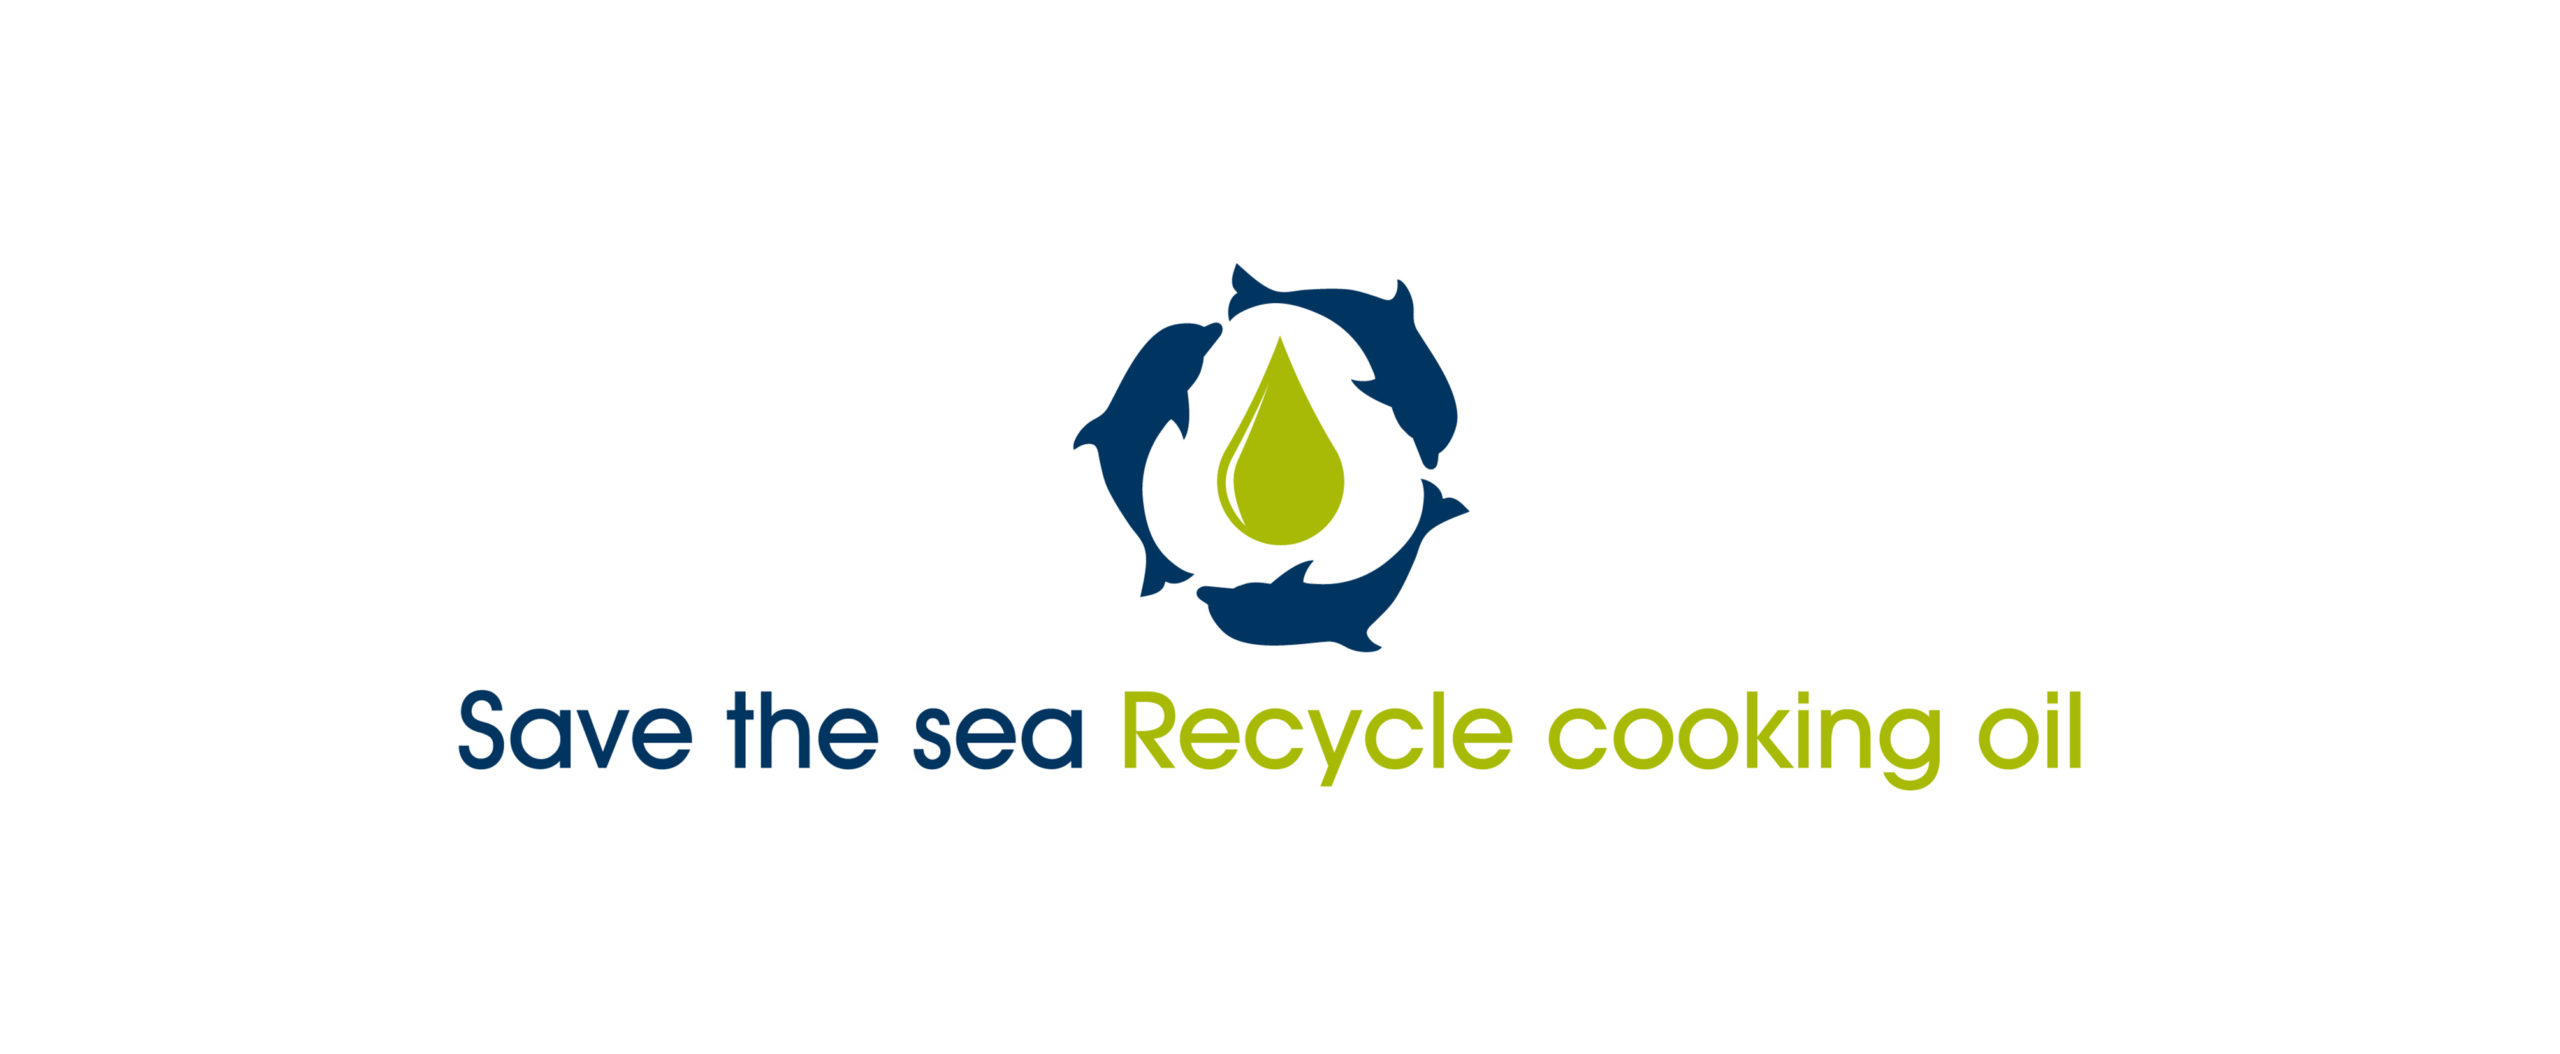 Save the sea Recycle cooking oil: la campagna Marevivo e RenOils per la salvaguardia del mare